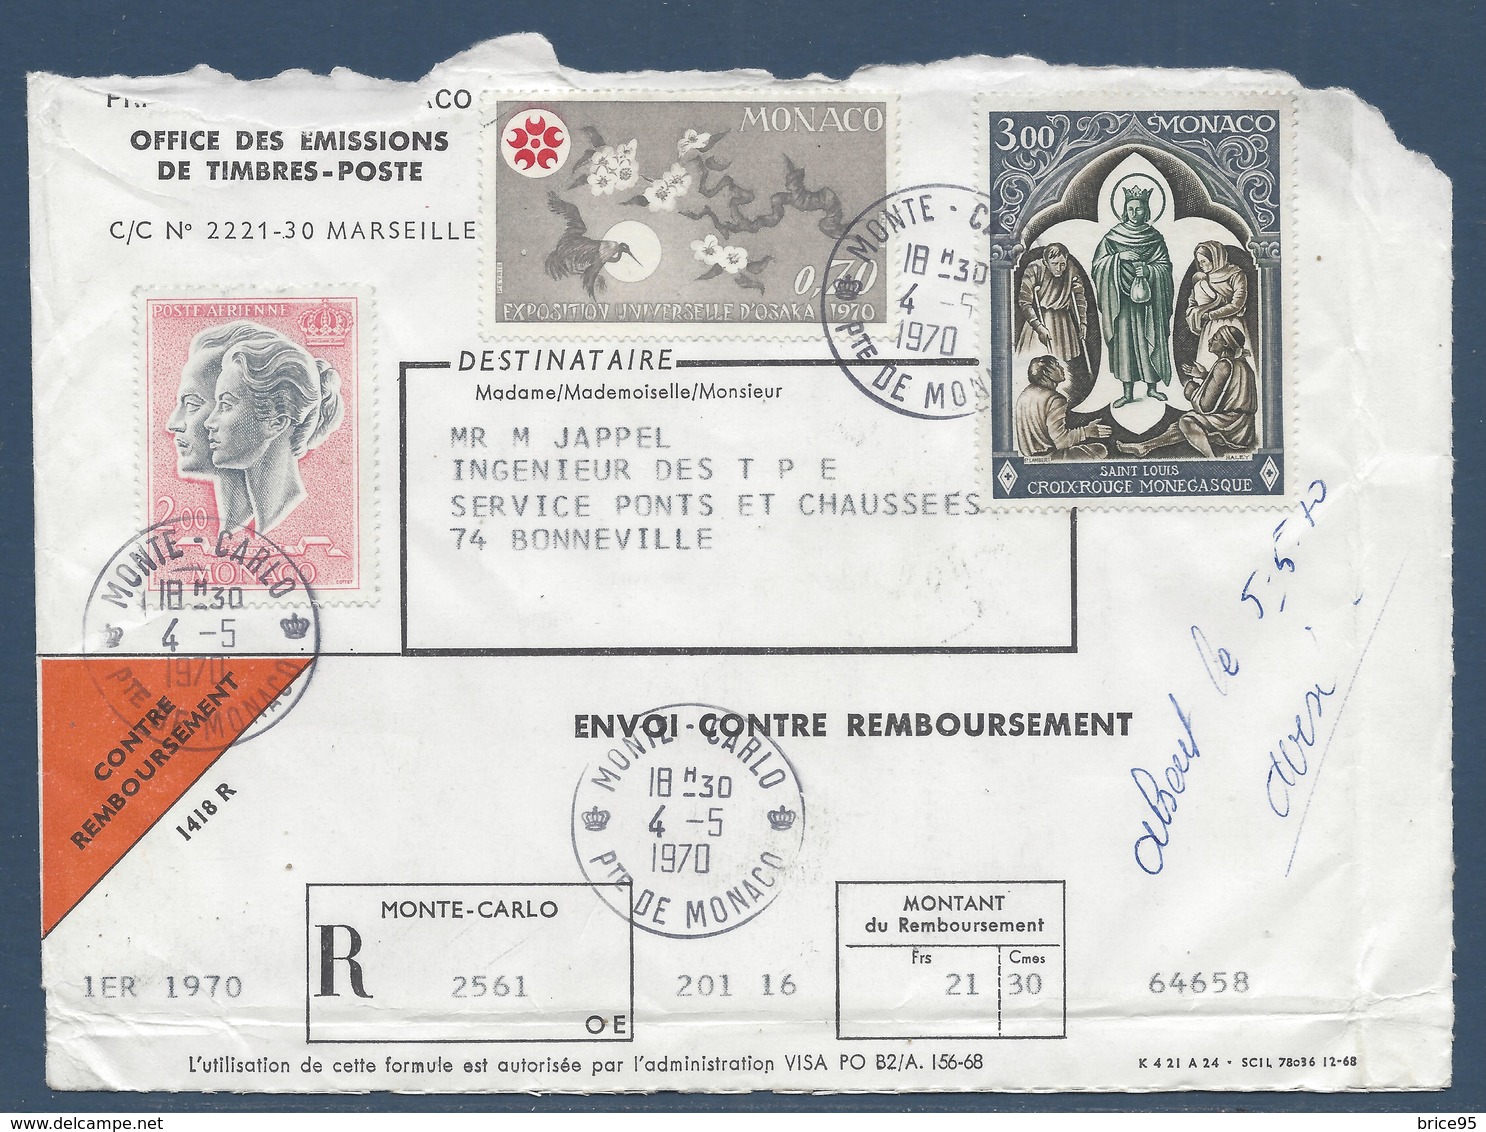 Monaco - YT N° 818, 825 Et PA N° 87 - Lettre Pour Un Envoi Contre Remboursement - 1970 - Covers & Documents